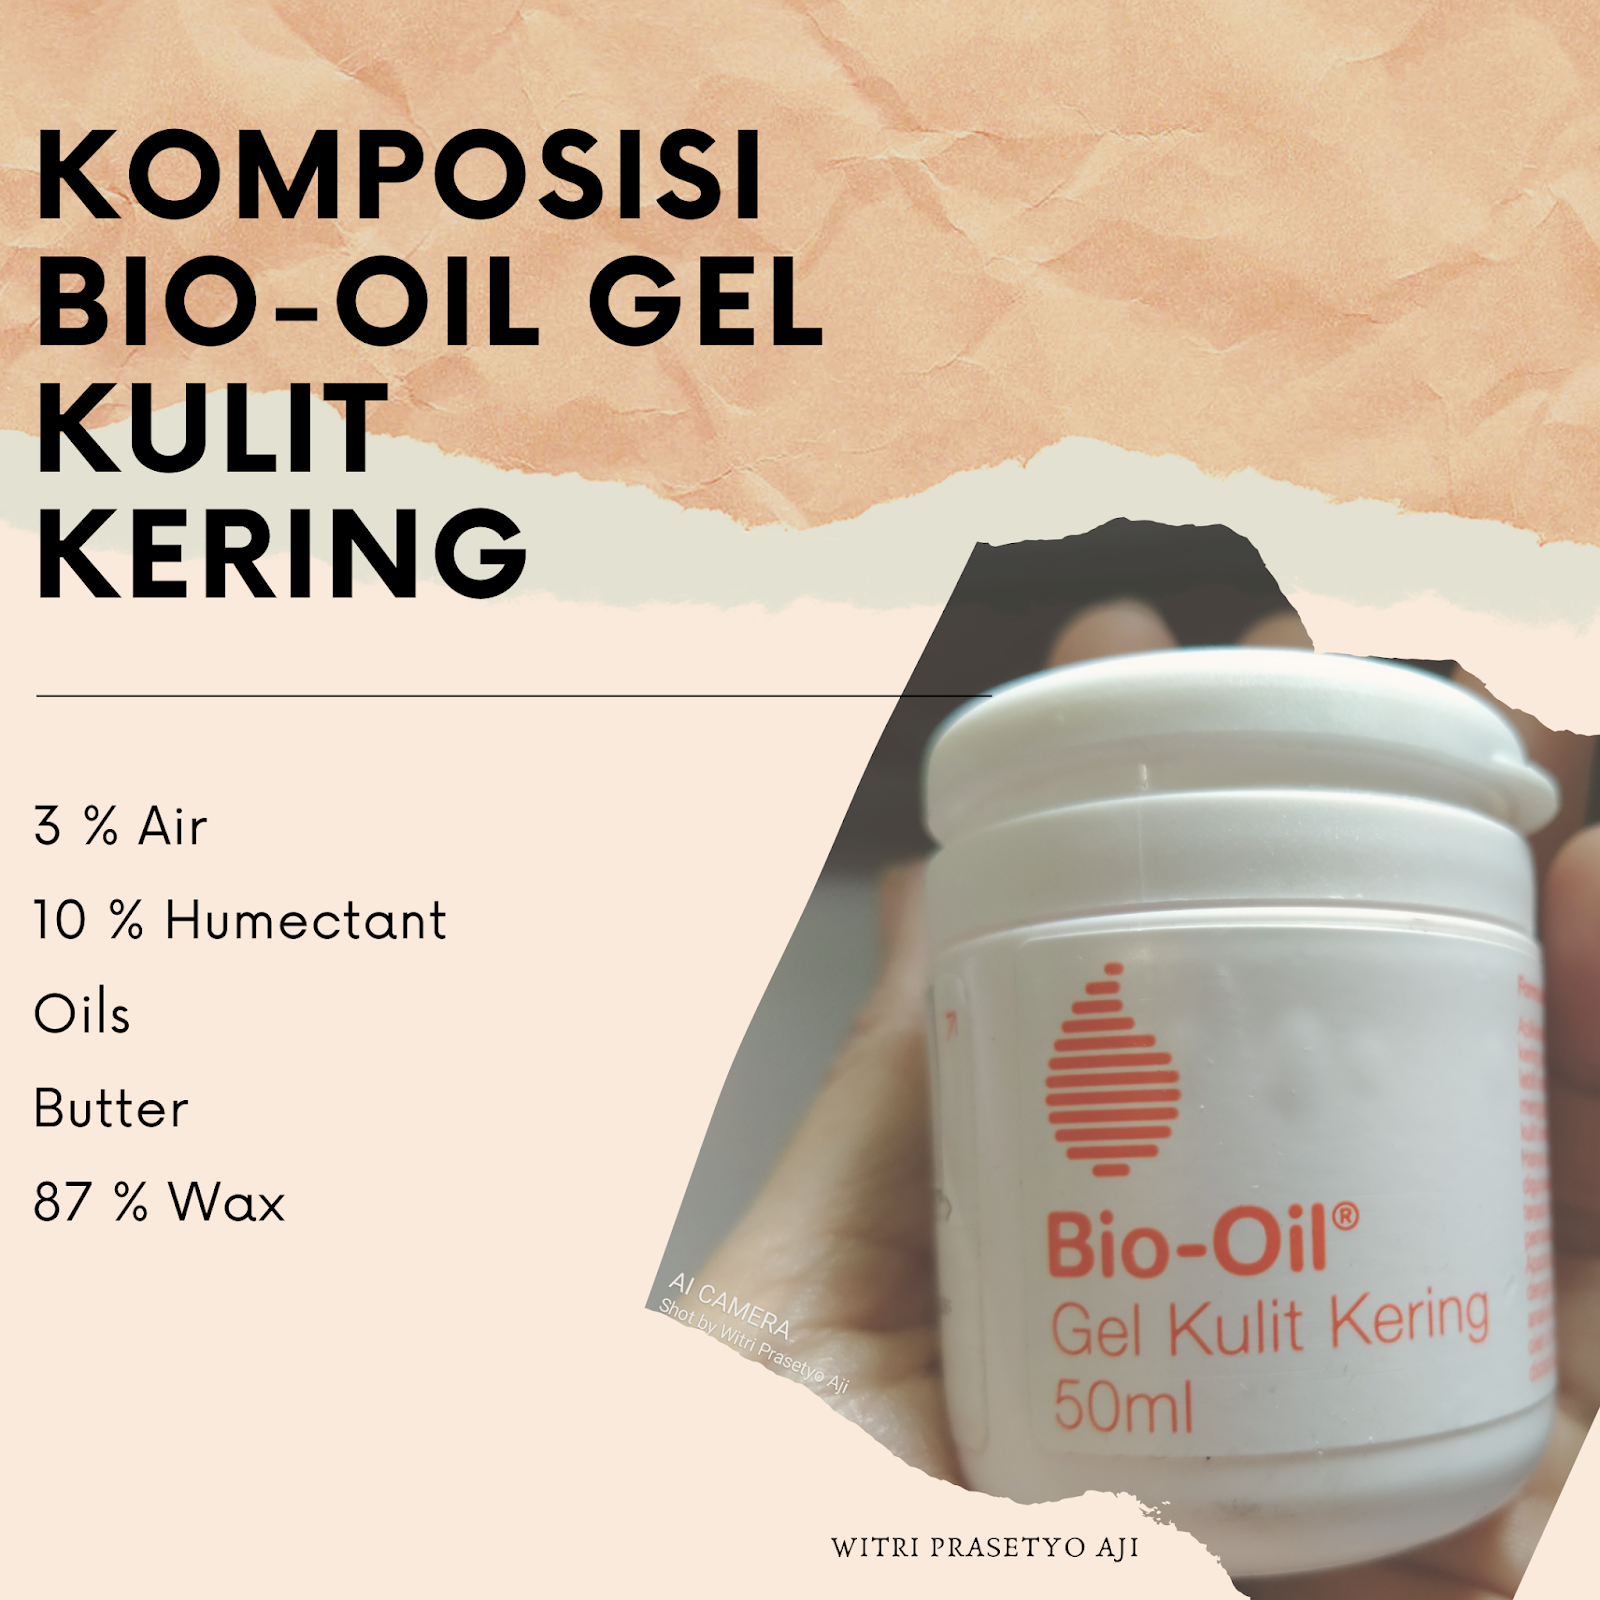 Komposisi Bio-Oil Gel Kulit Kering